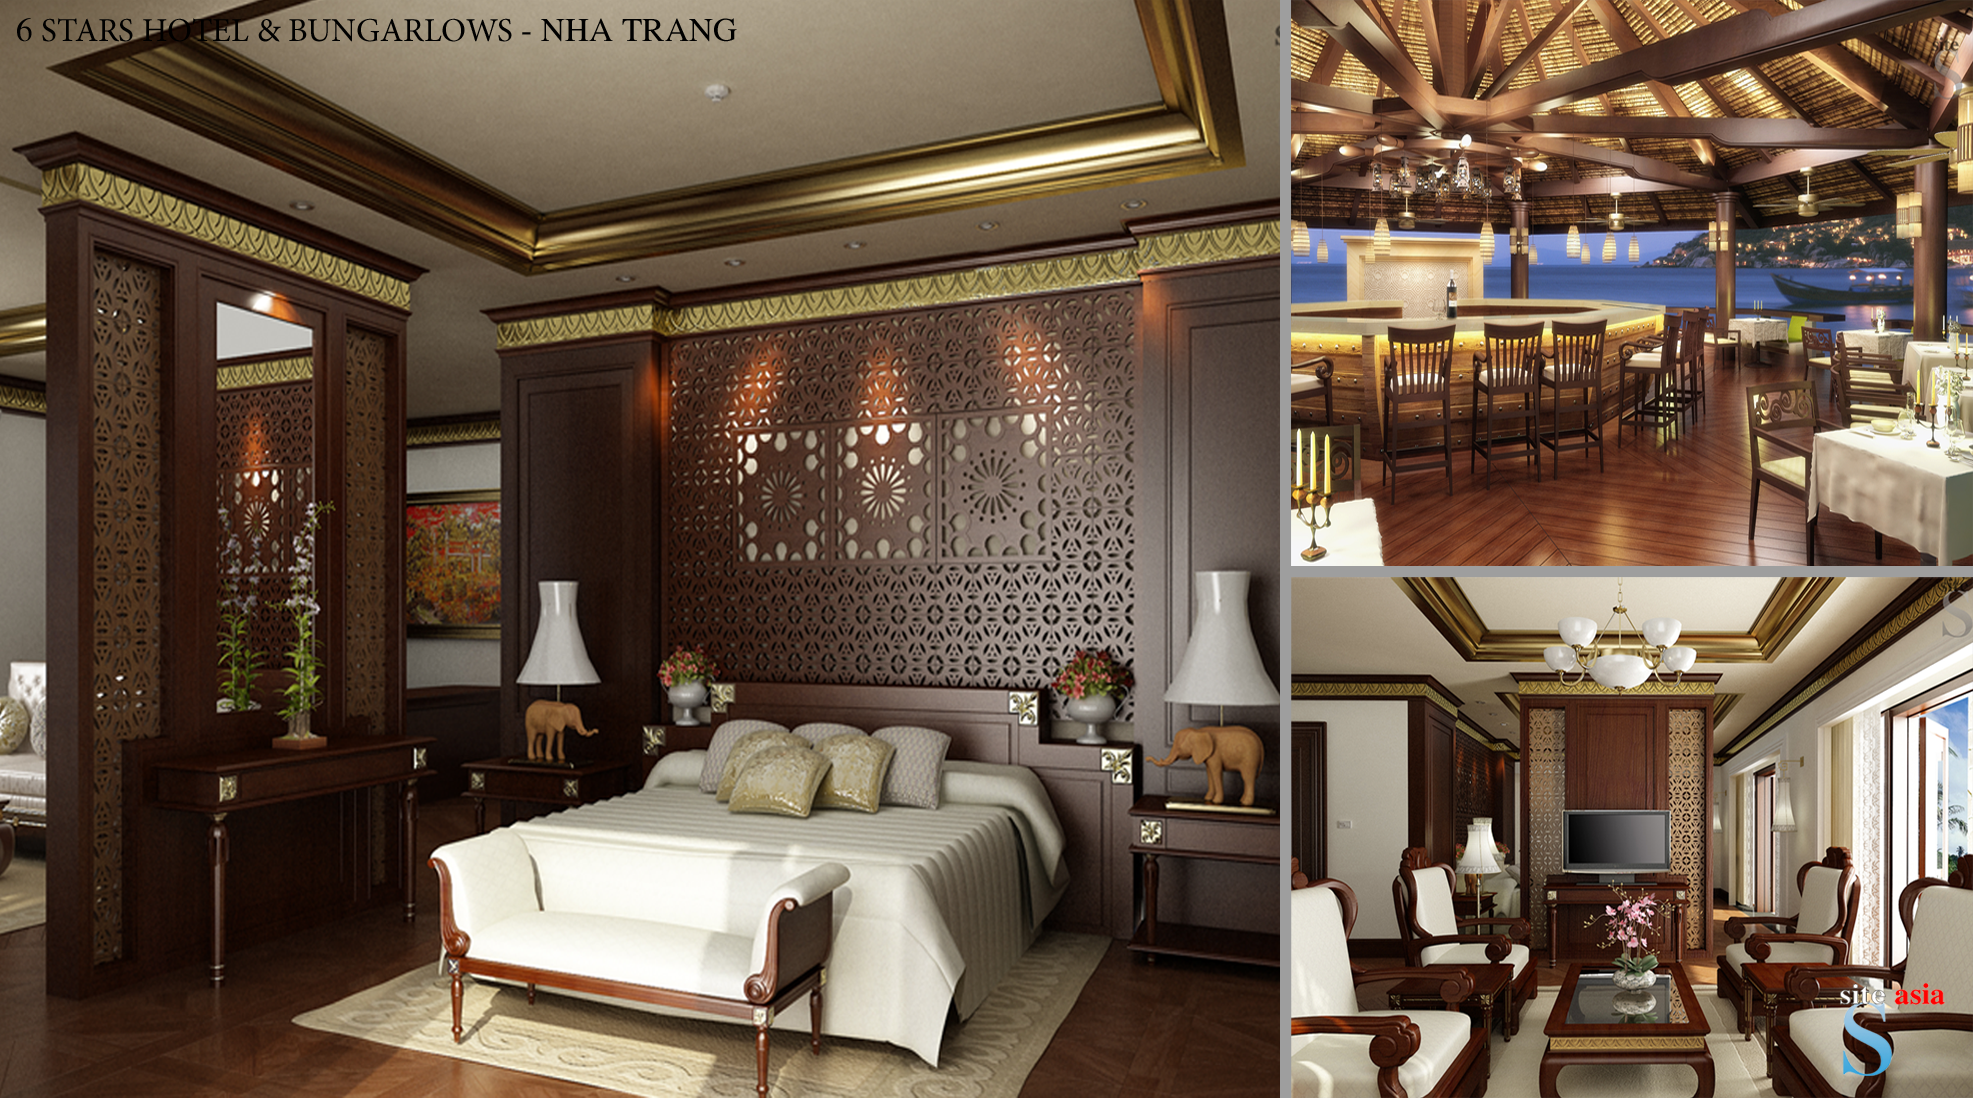 6 stars Hotel, Nha Trang